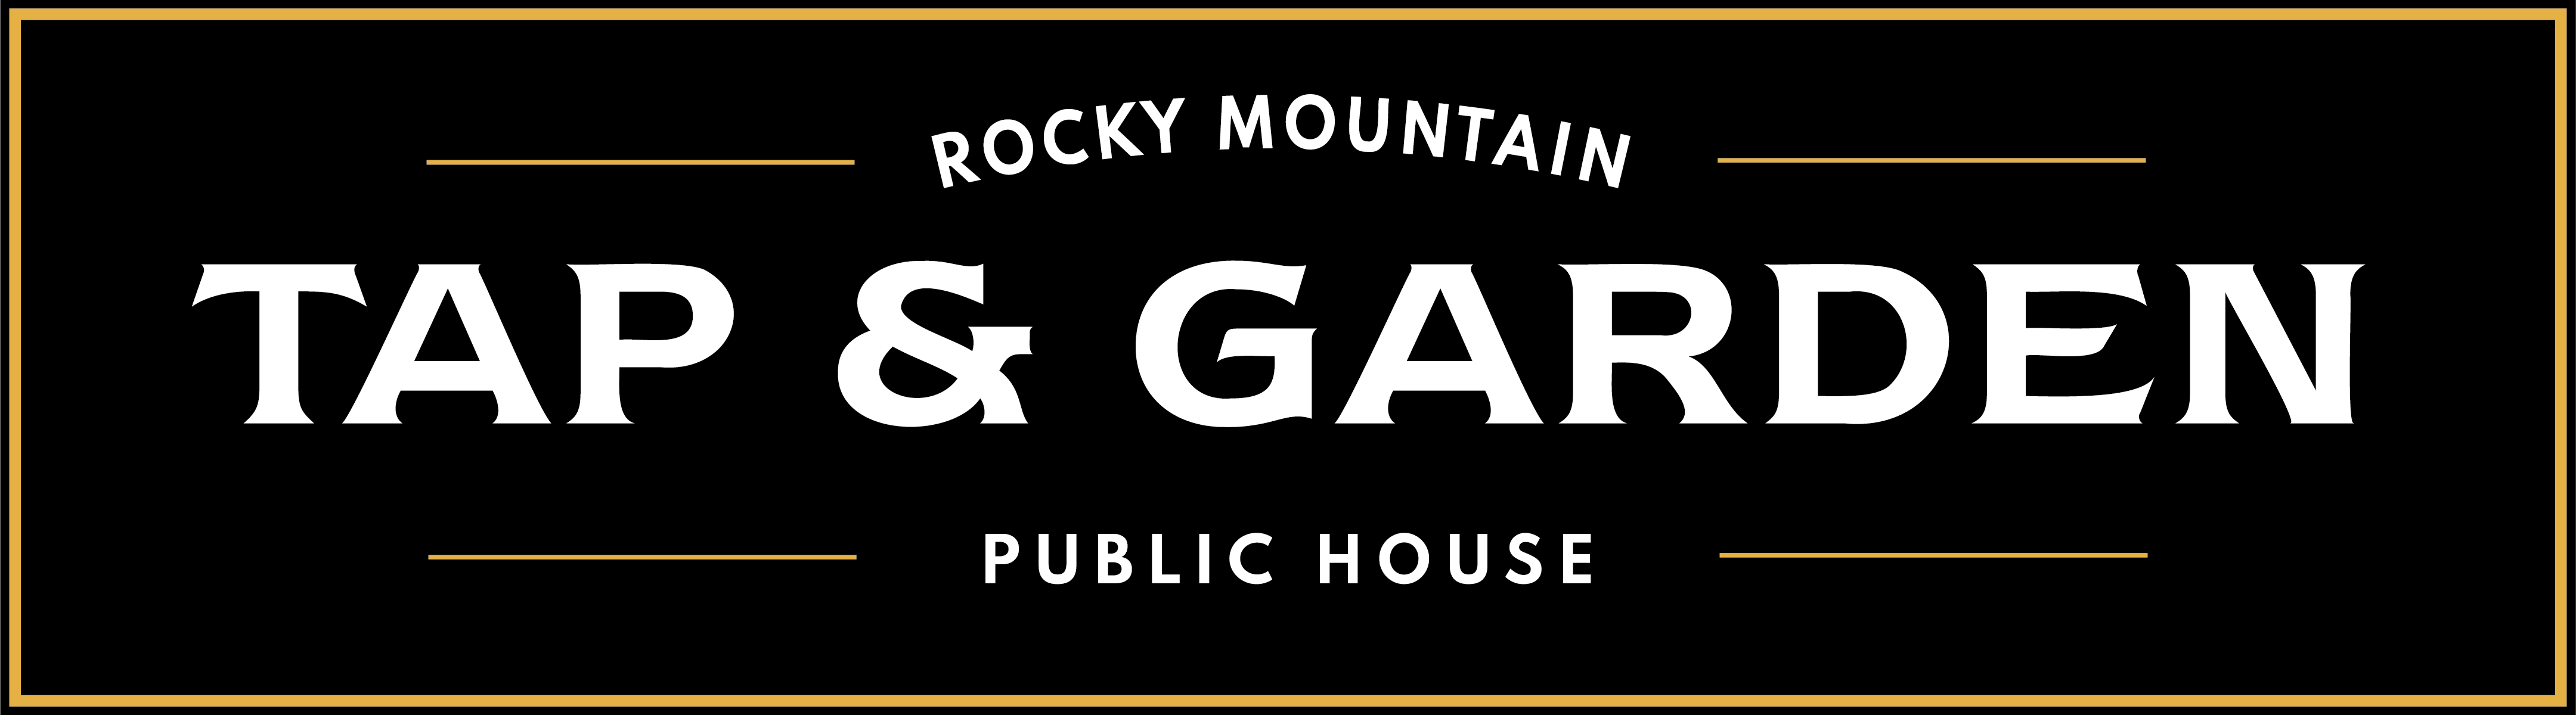 Rocky Mountain Tap & Garden Home